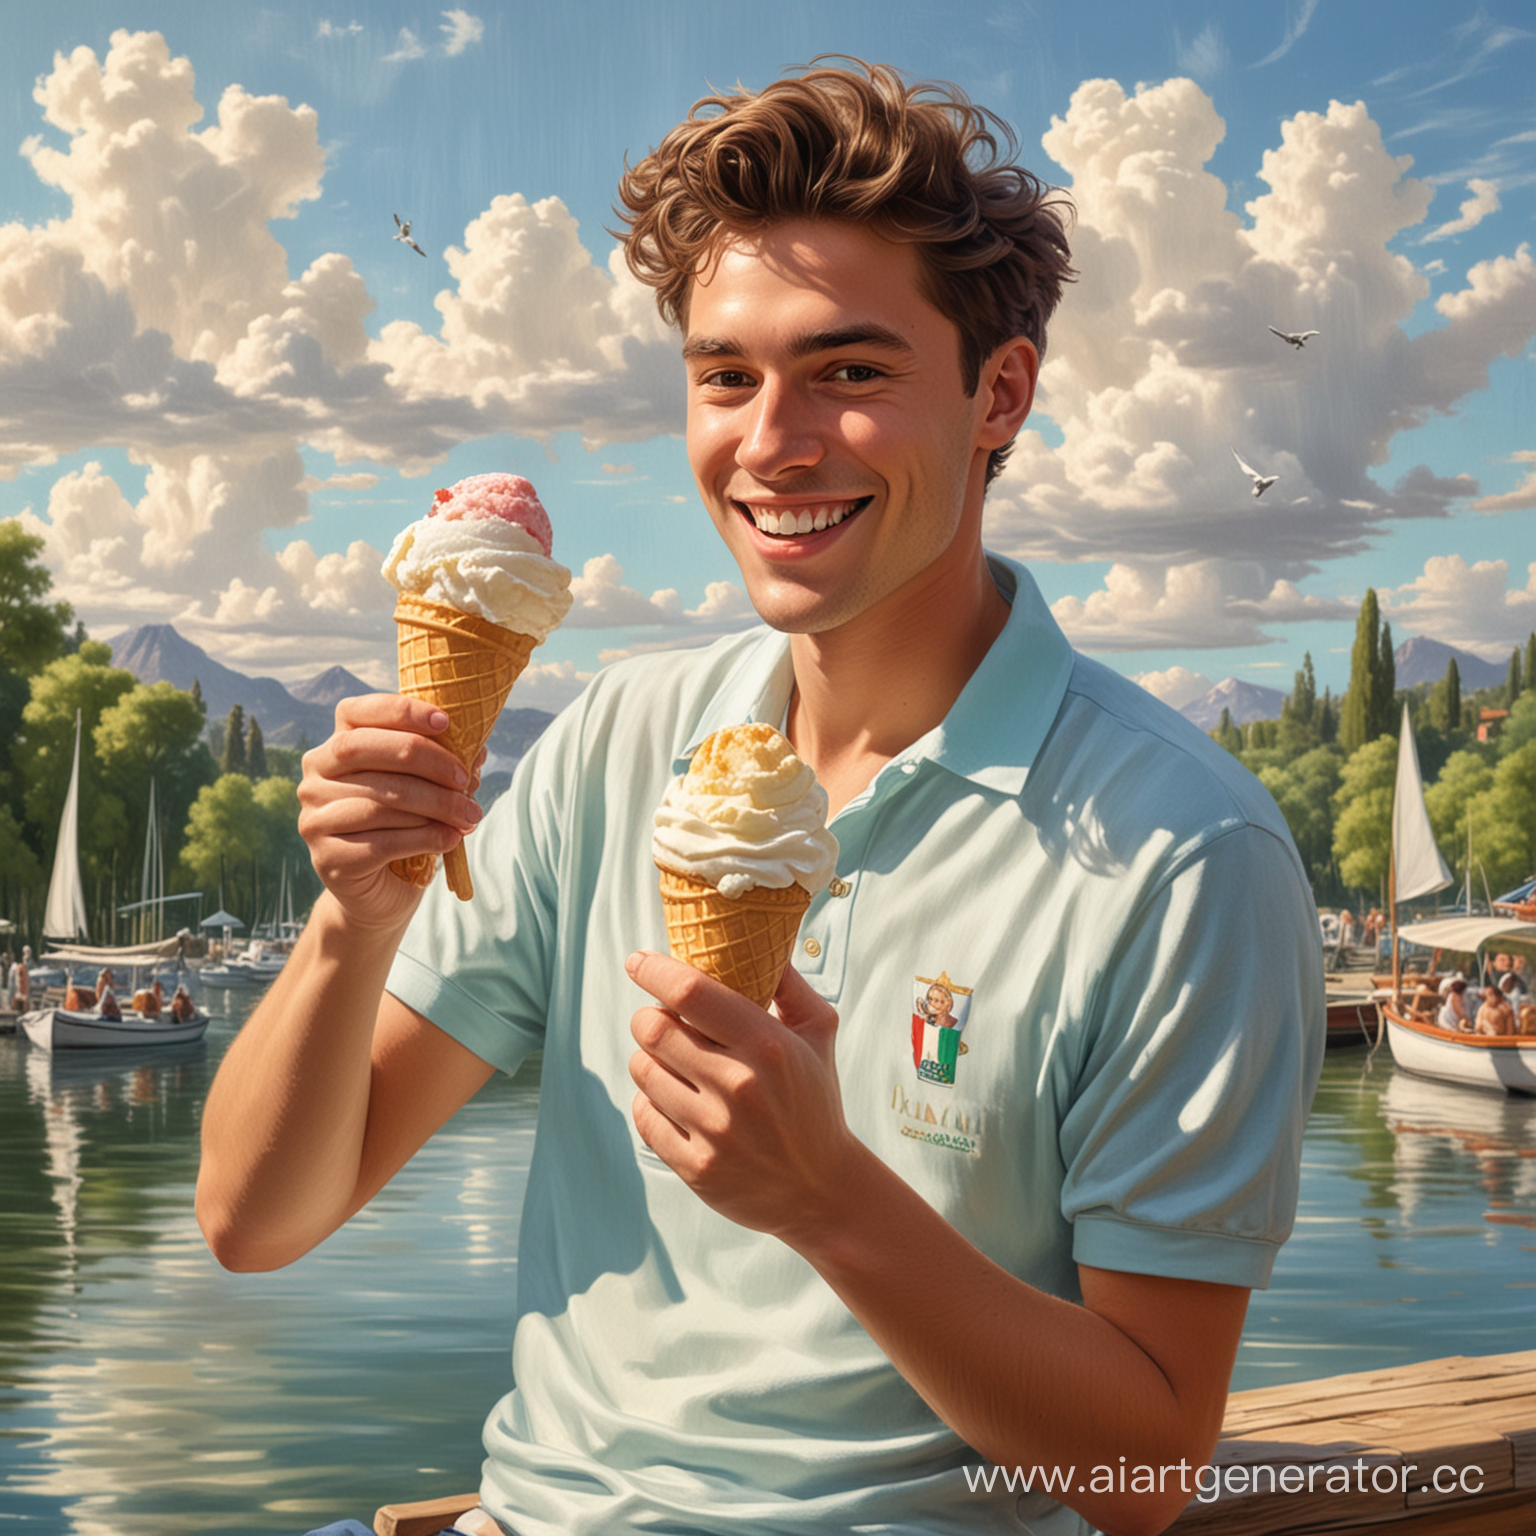 юноша в шортах  и поло, волосы распущены, улыбается и лижет шарик итальянского мороженого в вафельном рожке, рядом красивое озеро  и лодки, светит солнце и голубые облака. в стиле картин гогена лес и чайки